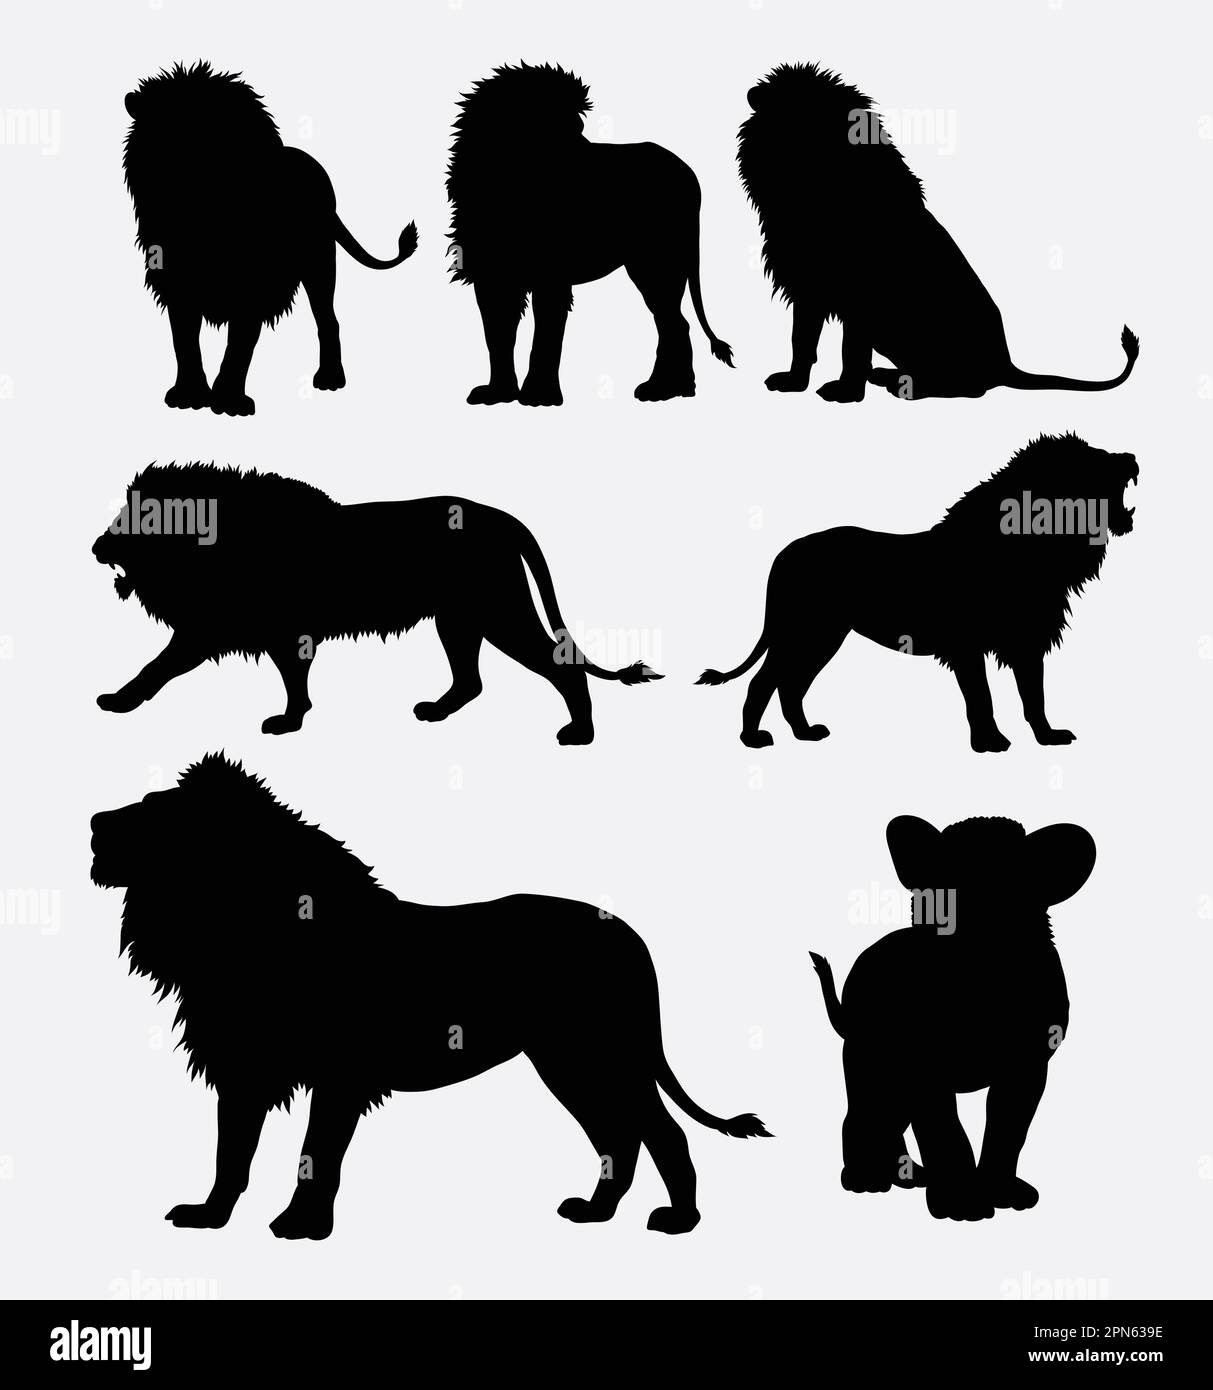 Silhouettes d'animaux sauvages de Lion. Bonne utilisation pour symbole, logo, icône web, mascotte, ou tout design que vous voulez. Facile à utiliser. Illustration de Vecteur